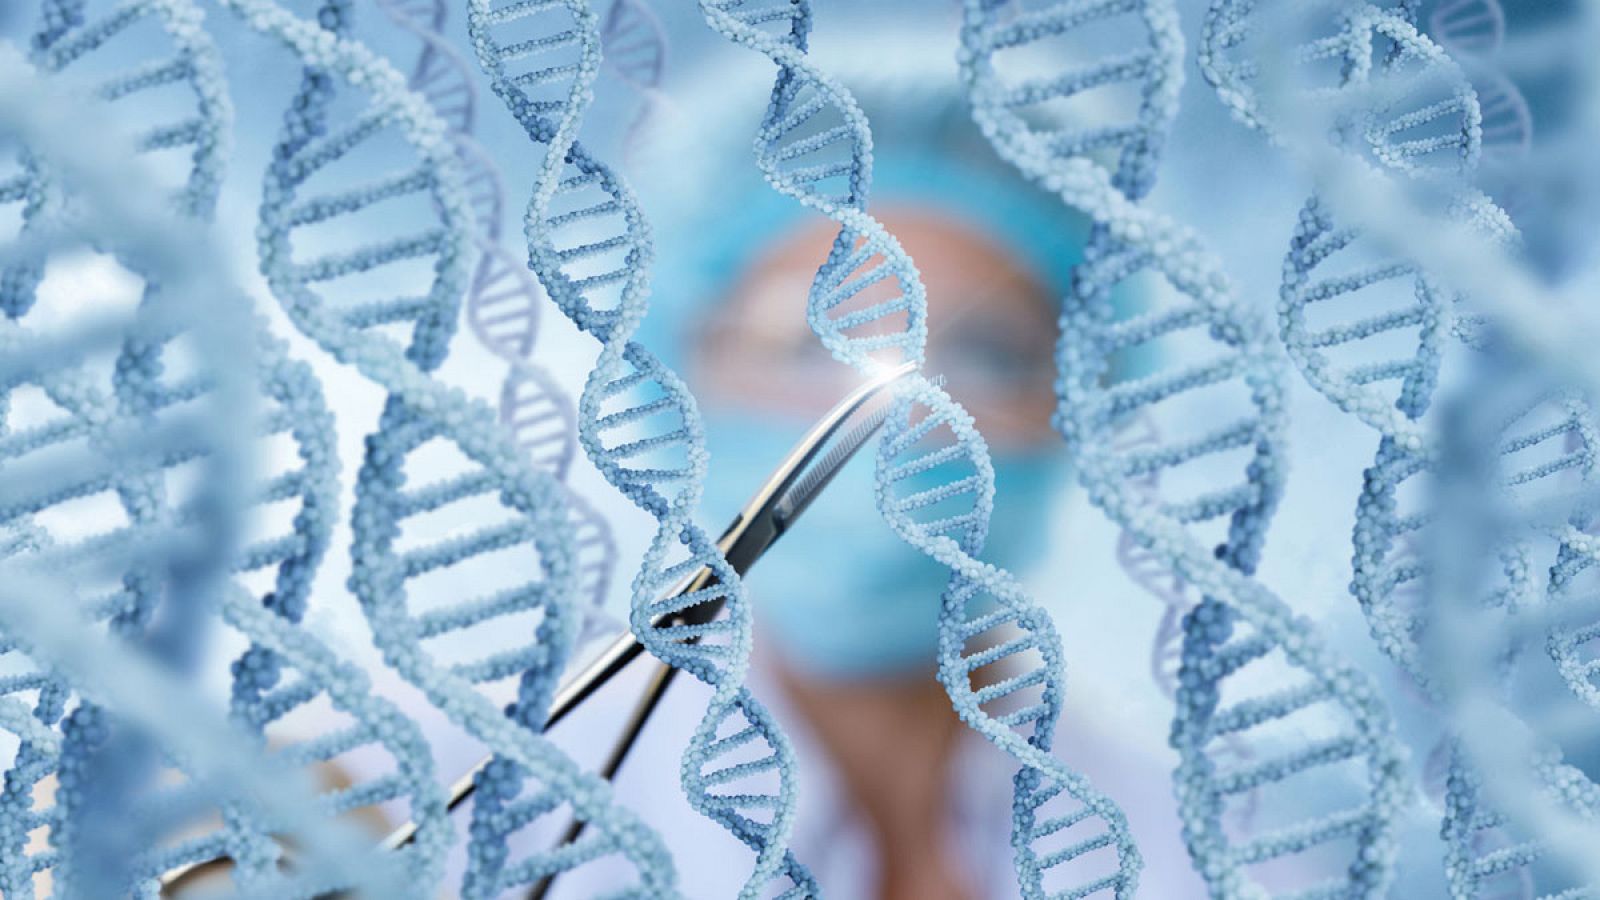 El descubrimiento de las tijeras moleculares CRISPR ha supuesto una revolución en la biología celular y generado muchas expectativas respecto a sus posibles aplicaciones médicas.